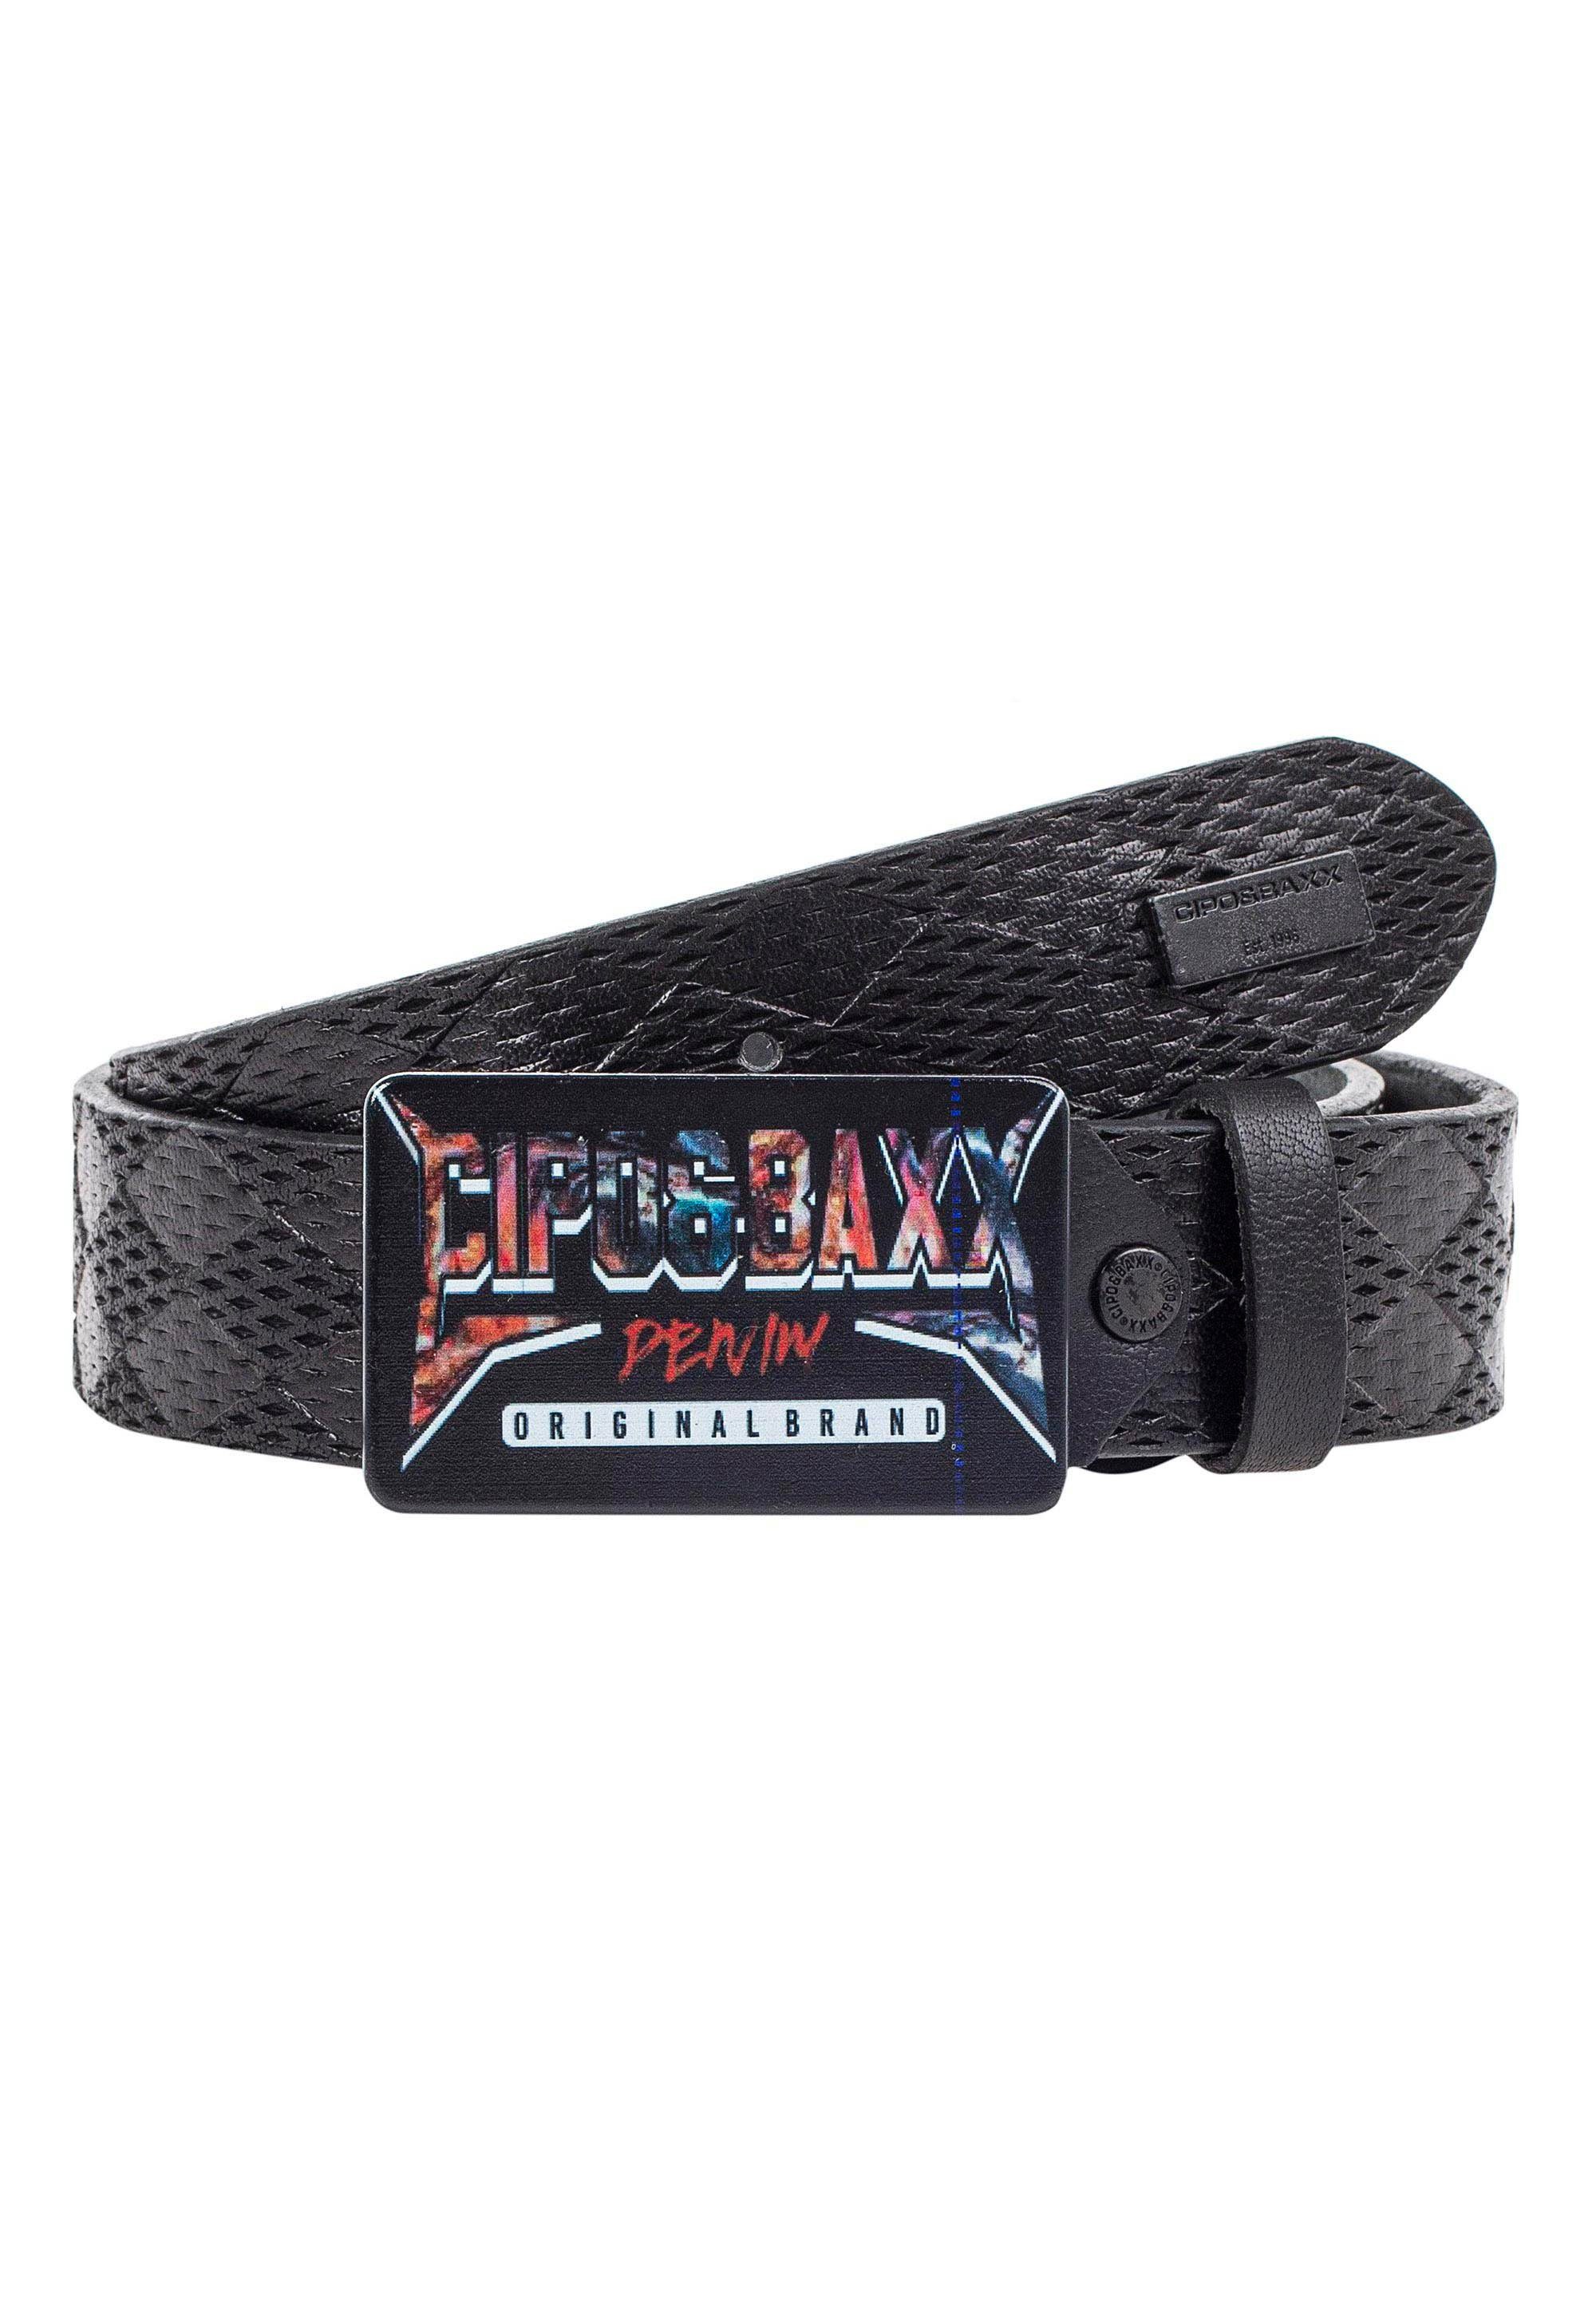 Freiraum Cipo & Baxx Ledergürtel schwarz rockiger mit Schließe